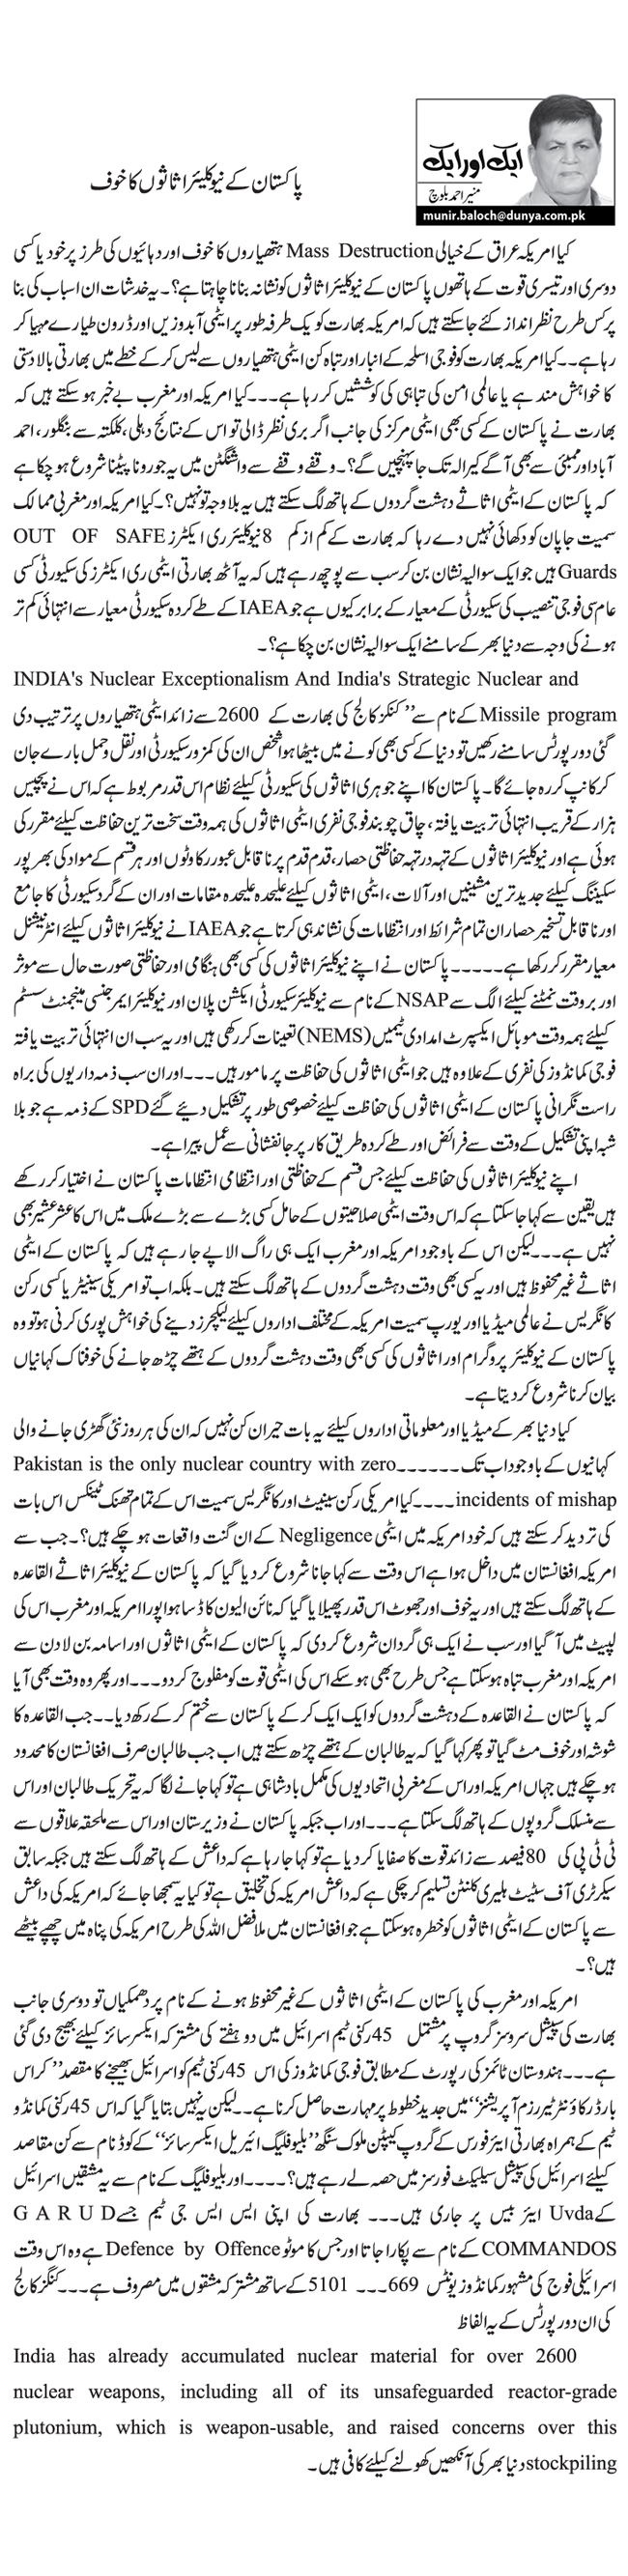 پاکستان کے نیوکلیئر اثاثوں کا خوف    